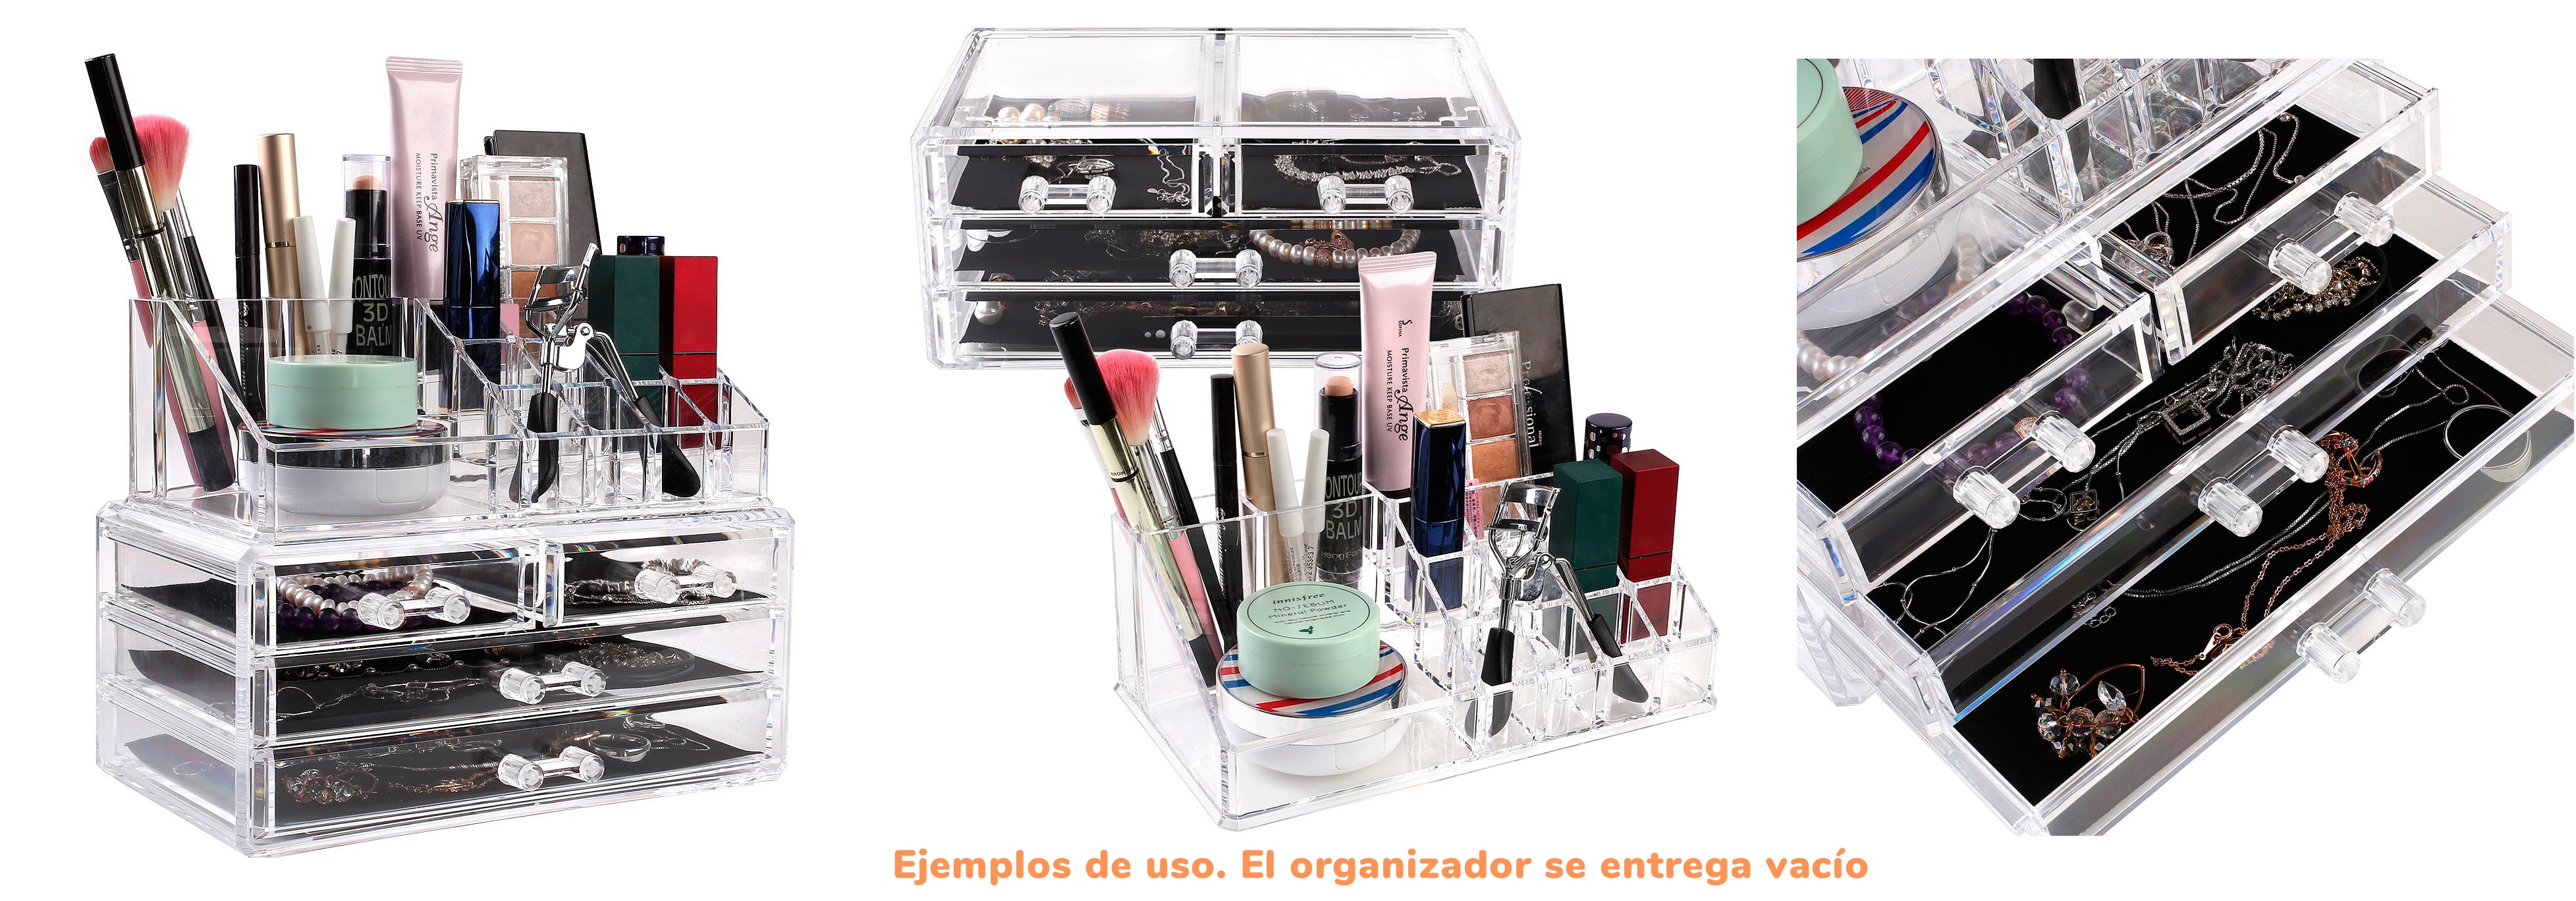 Ejemplos de uso del Organizador cosméticos y maquillajes